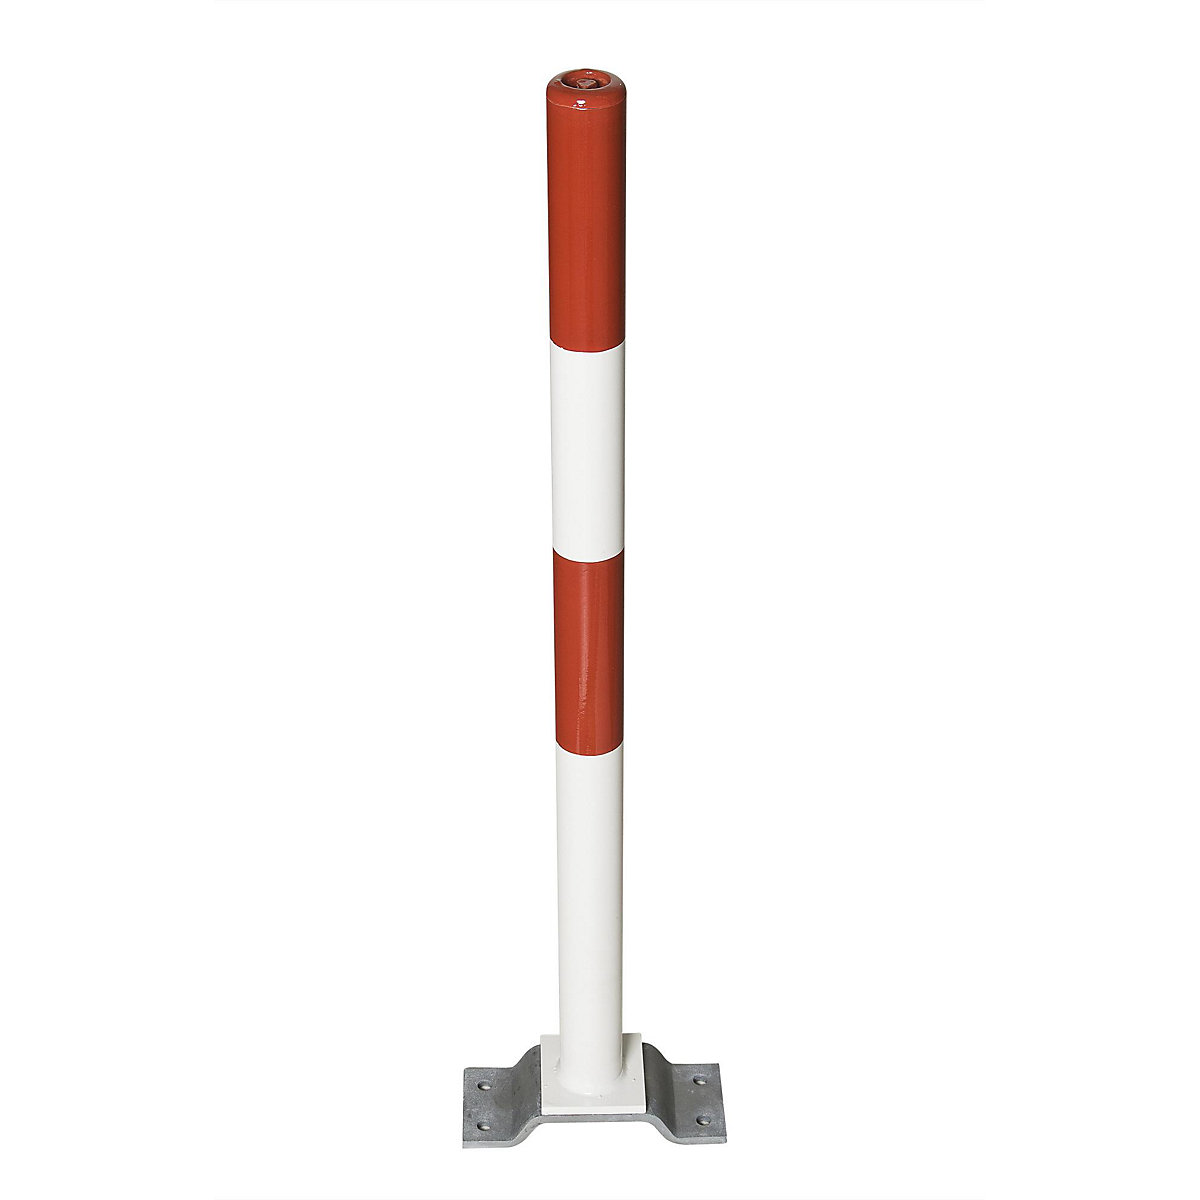 Čelični stup za ograđivanje, za pričvršćivanje tiplama, Ø 76 mm, u crveno-bijeloj boji-7